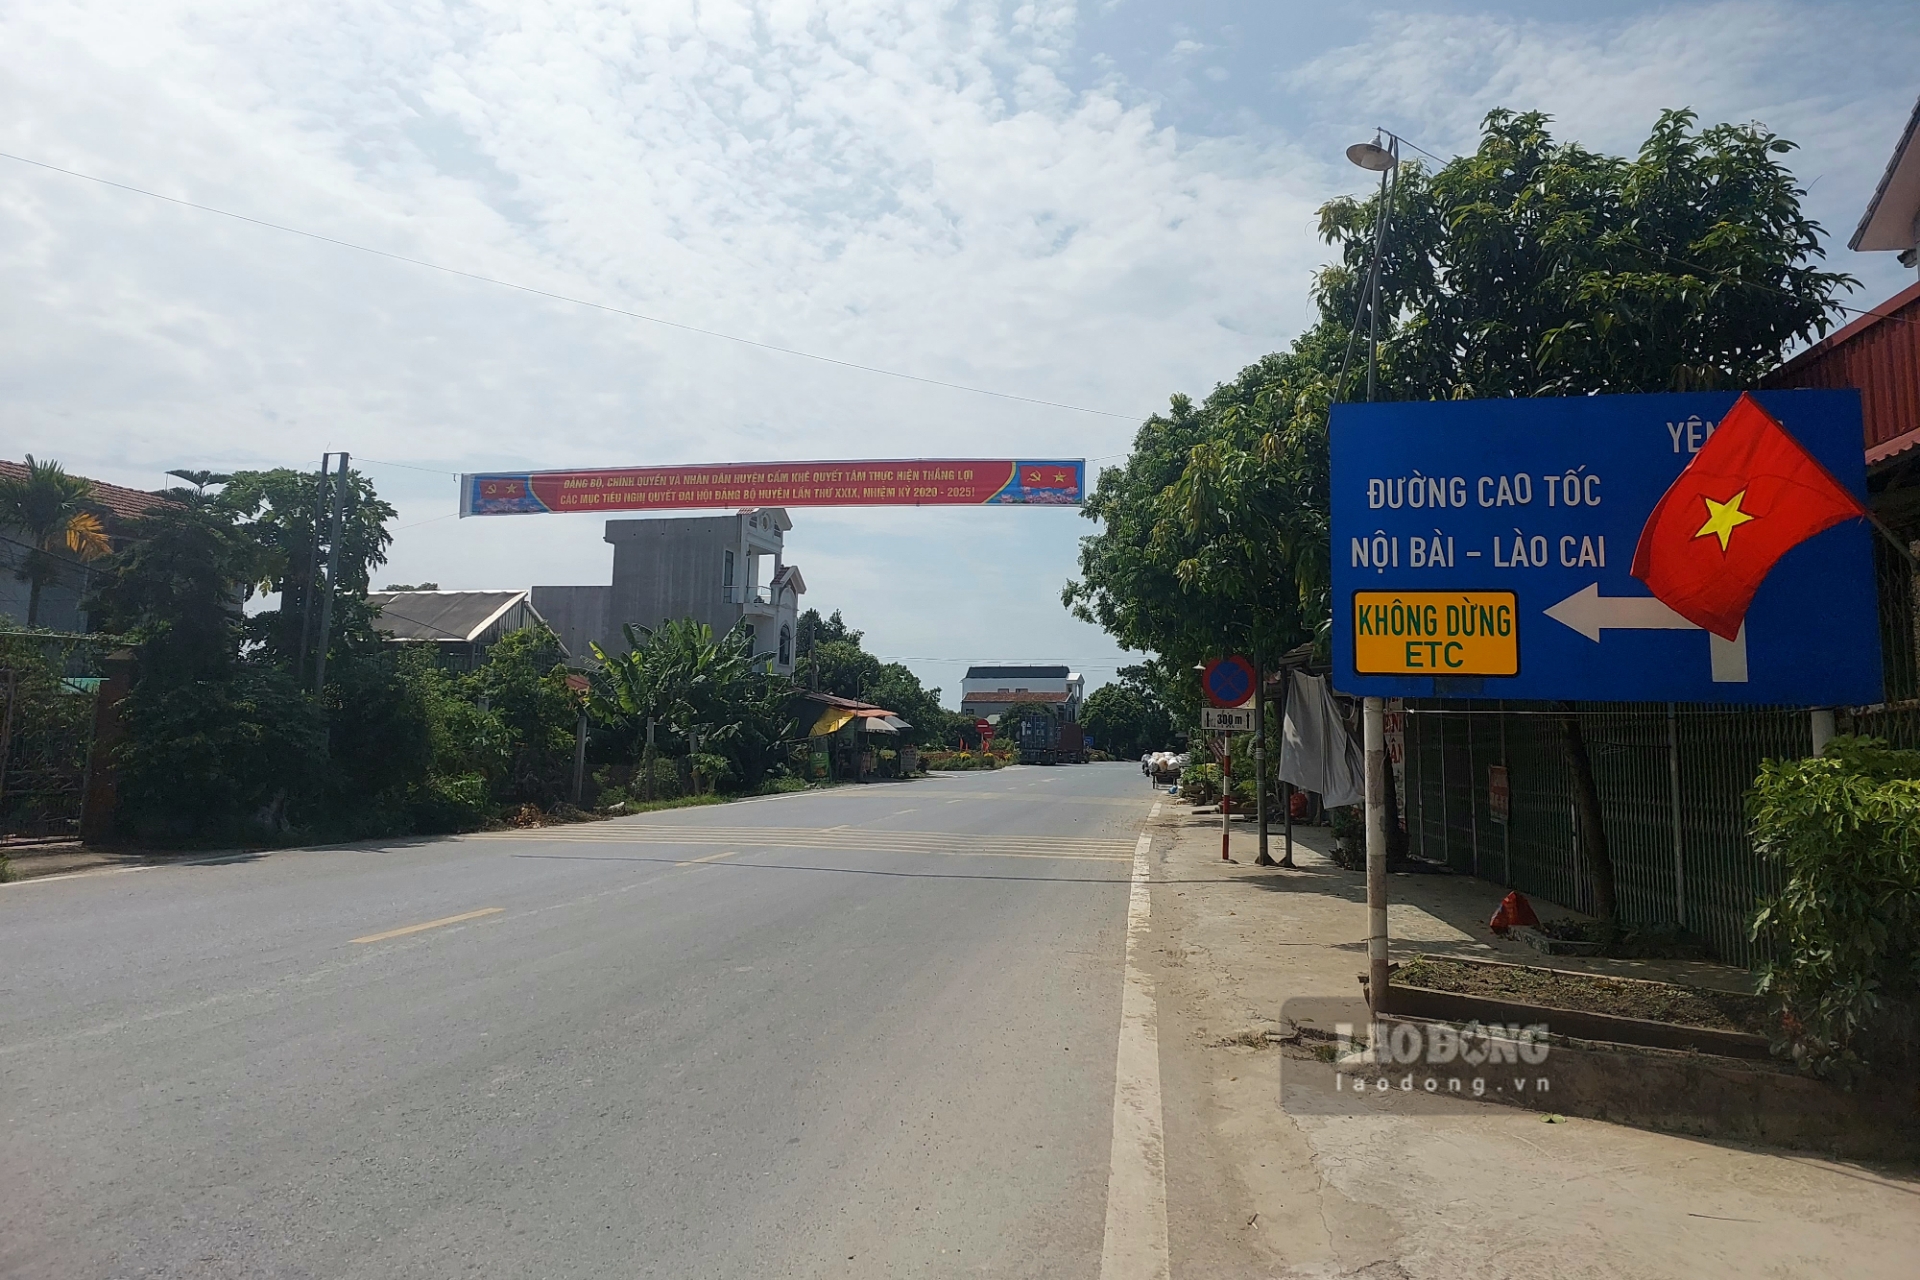 KCN Cẩm Khê nằm ở phía Tây Bắc của tỉnh Phú Thọ, được quy hoạch rộng tới 450ha nằm trên địa bàn thị trấn Cẩm Khê và xã Xương Thịnh (huyện Cẩm Khê), ở vị trí kết nối vùng khi có tuyến đường giao thông kết nối với đường cao tốc Hà Nội – Lào Cai tại nút giao IC10 cách 0,8km, cách tuyến Quốc lộ 32C chỉ khoảng 300m, cách Hà Nội 100km.